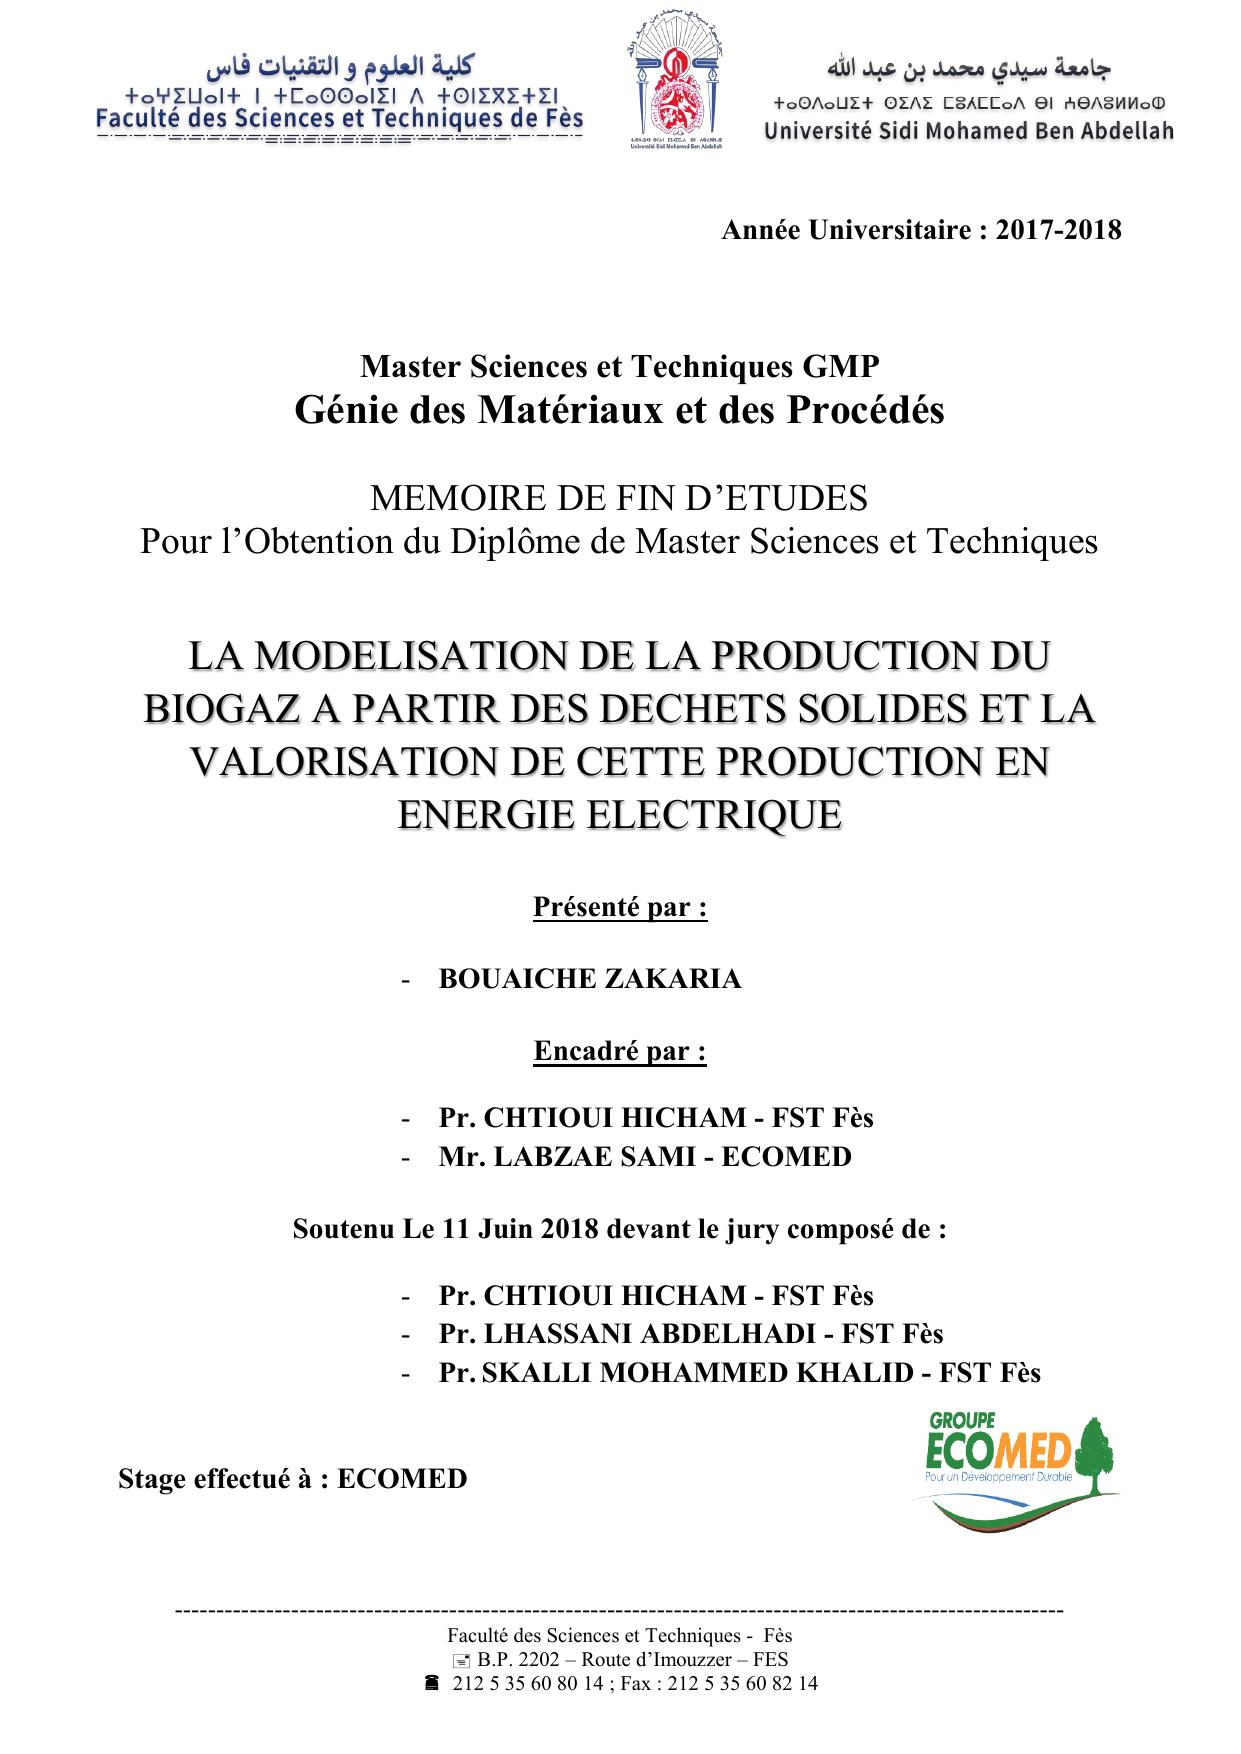 La modélisation de la production du biogaz à partir des déchets solides et la valorisation de cette production en énergie électrique